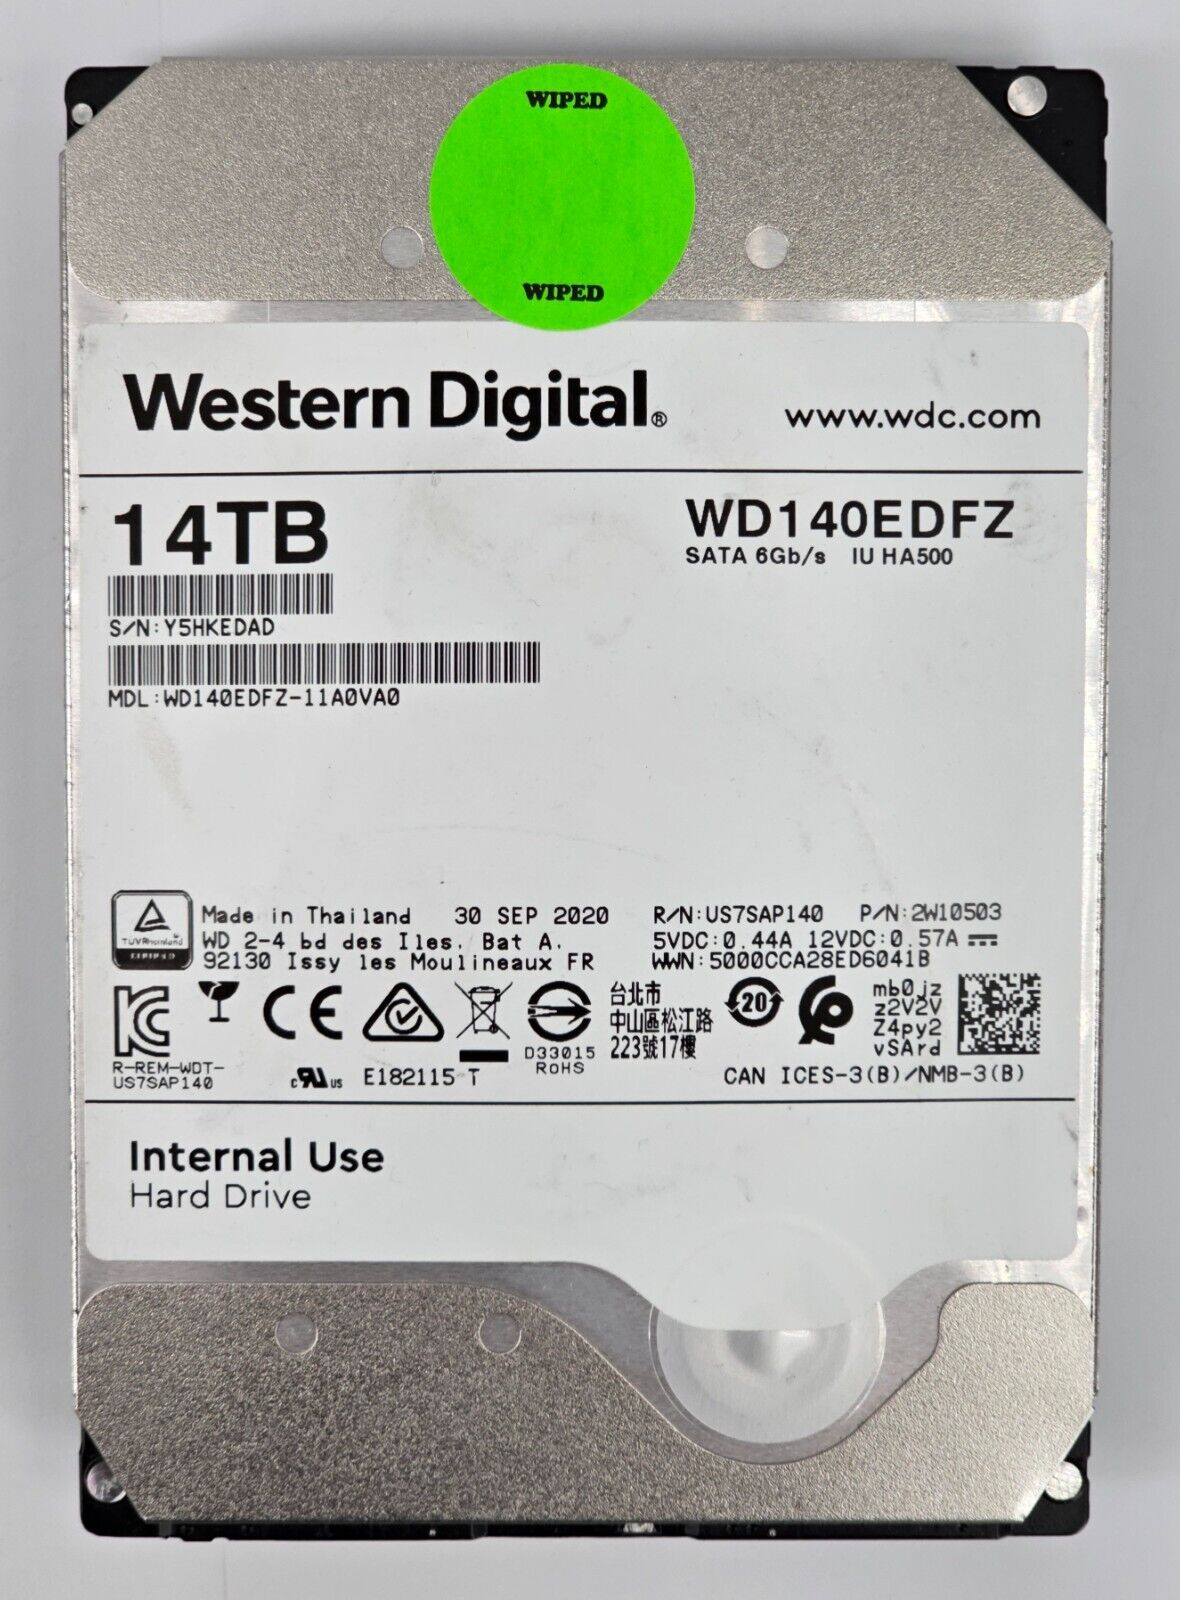 Western Digital 14TB Hard Drive - 5400 RPM SATA 6Gb/s 3.5'' HDD - WD140EDFZ